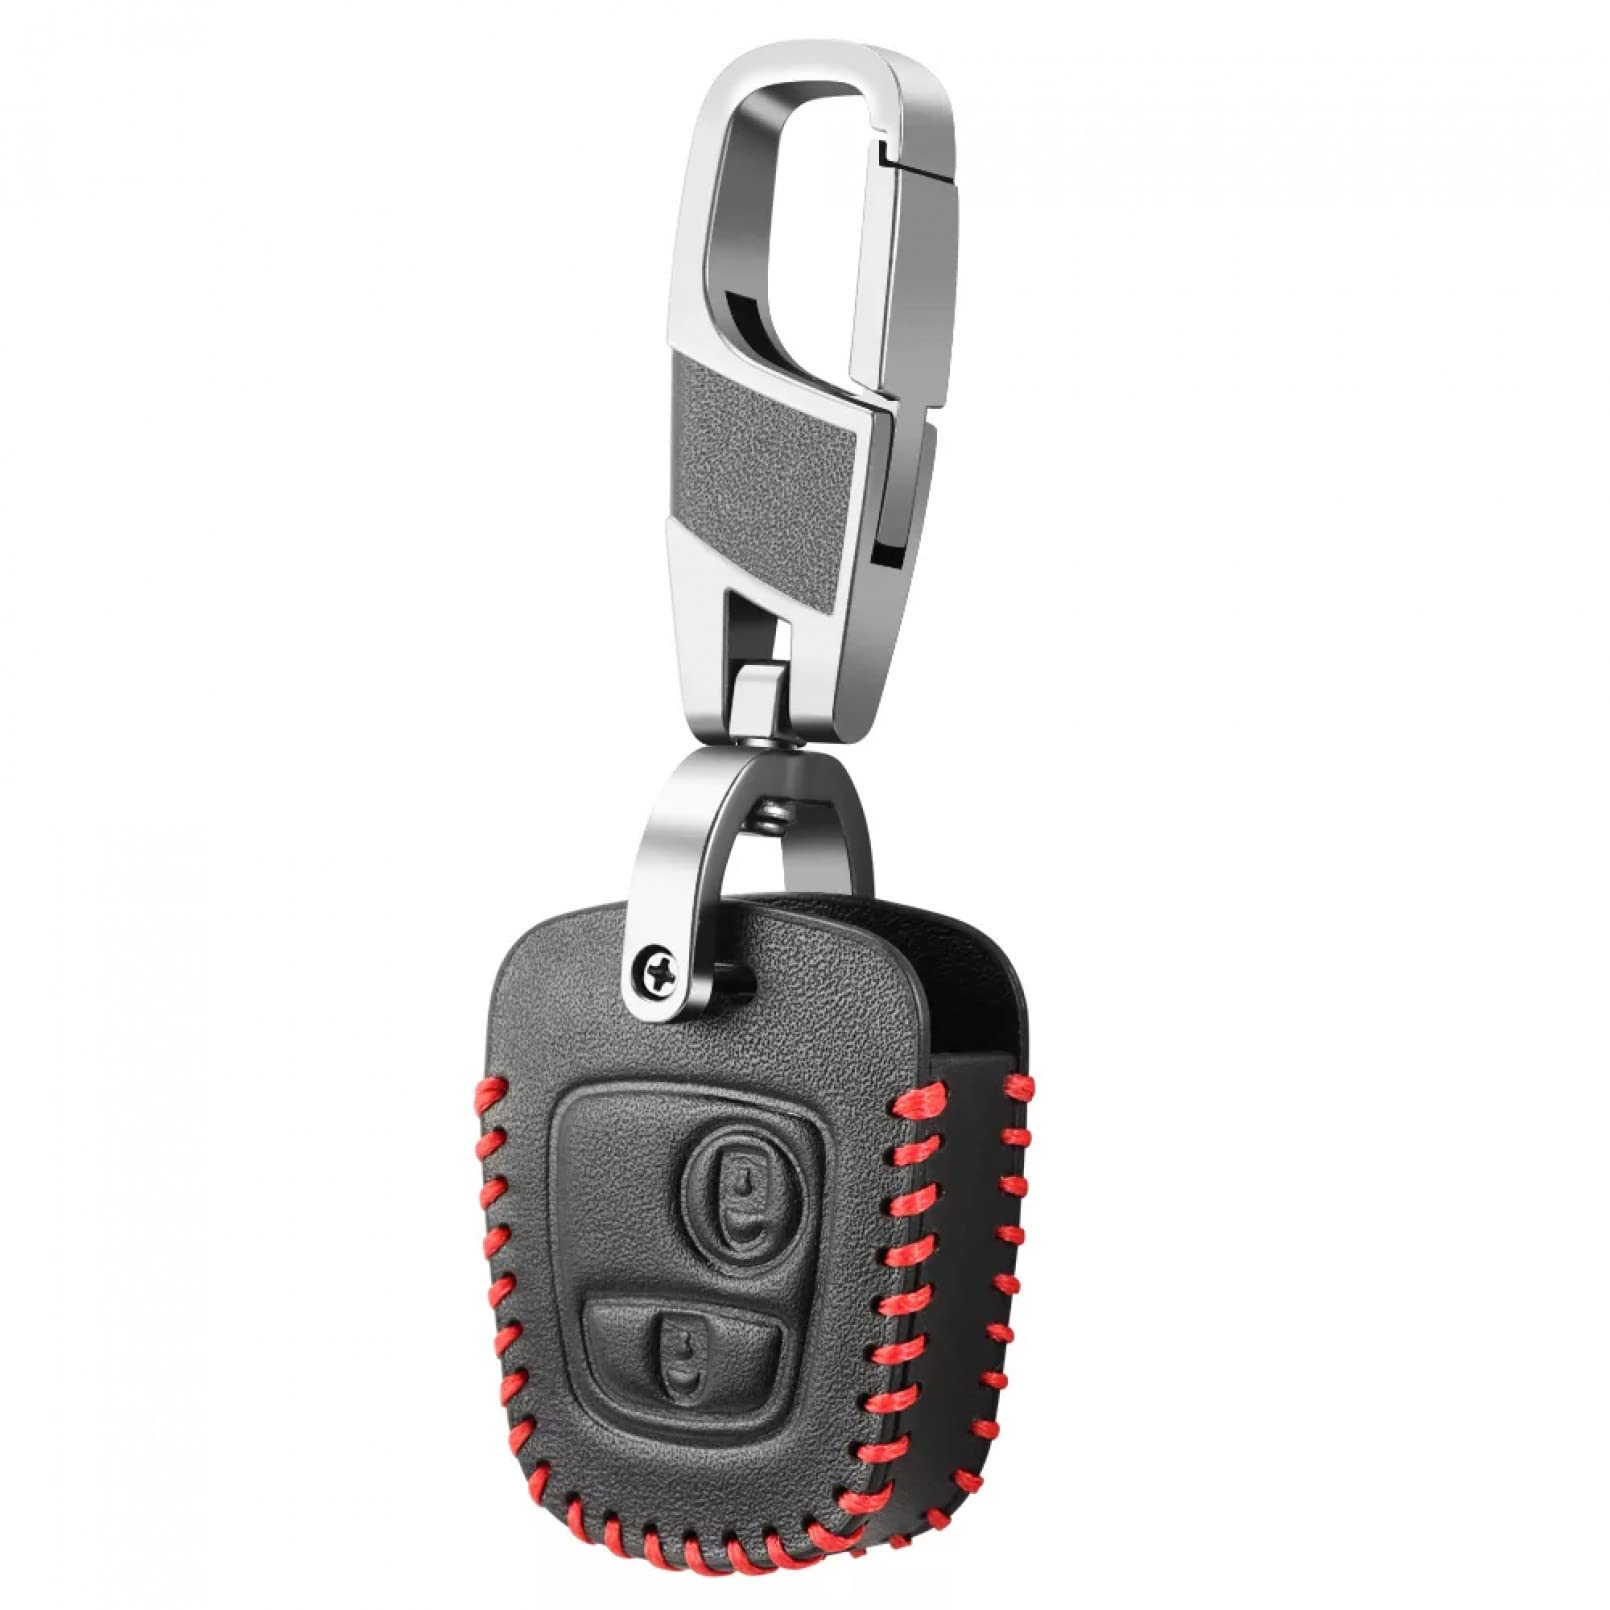 ALIANQ Leder Autoschlüssel Fall Abdeckung Schlüsselanhänger für Peugeot 107 206 207 306 307 407 Schlüsseletui für Citroen C3 C1 C2 C4 XSARA Picasso Remote Shell Fob von ALIANQ